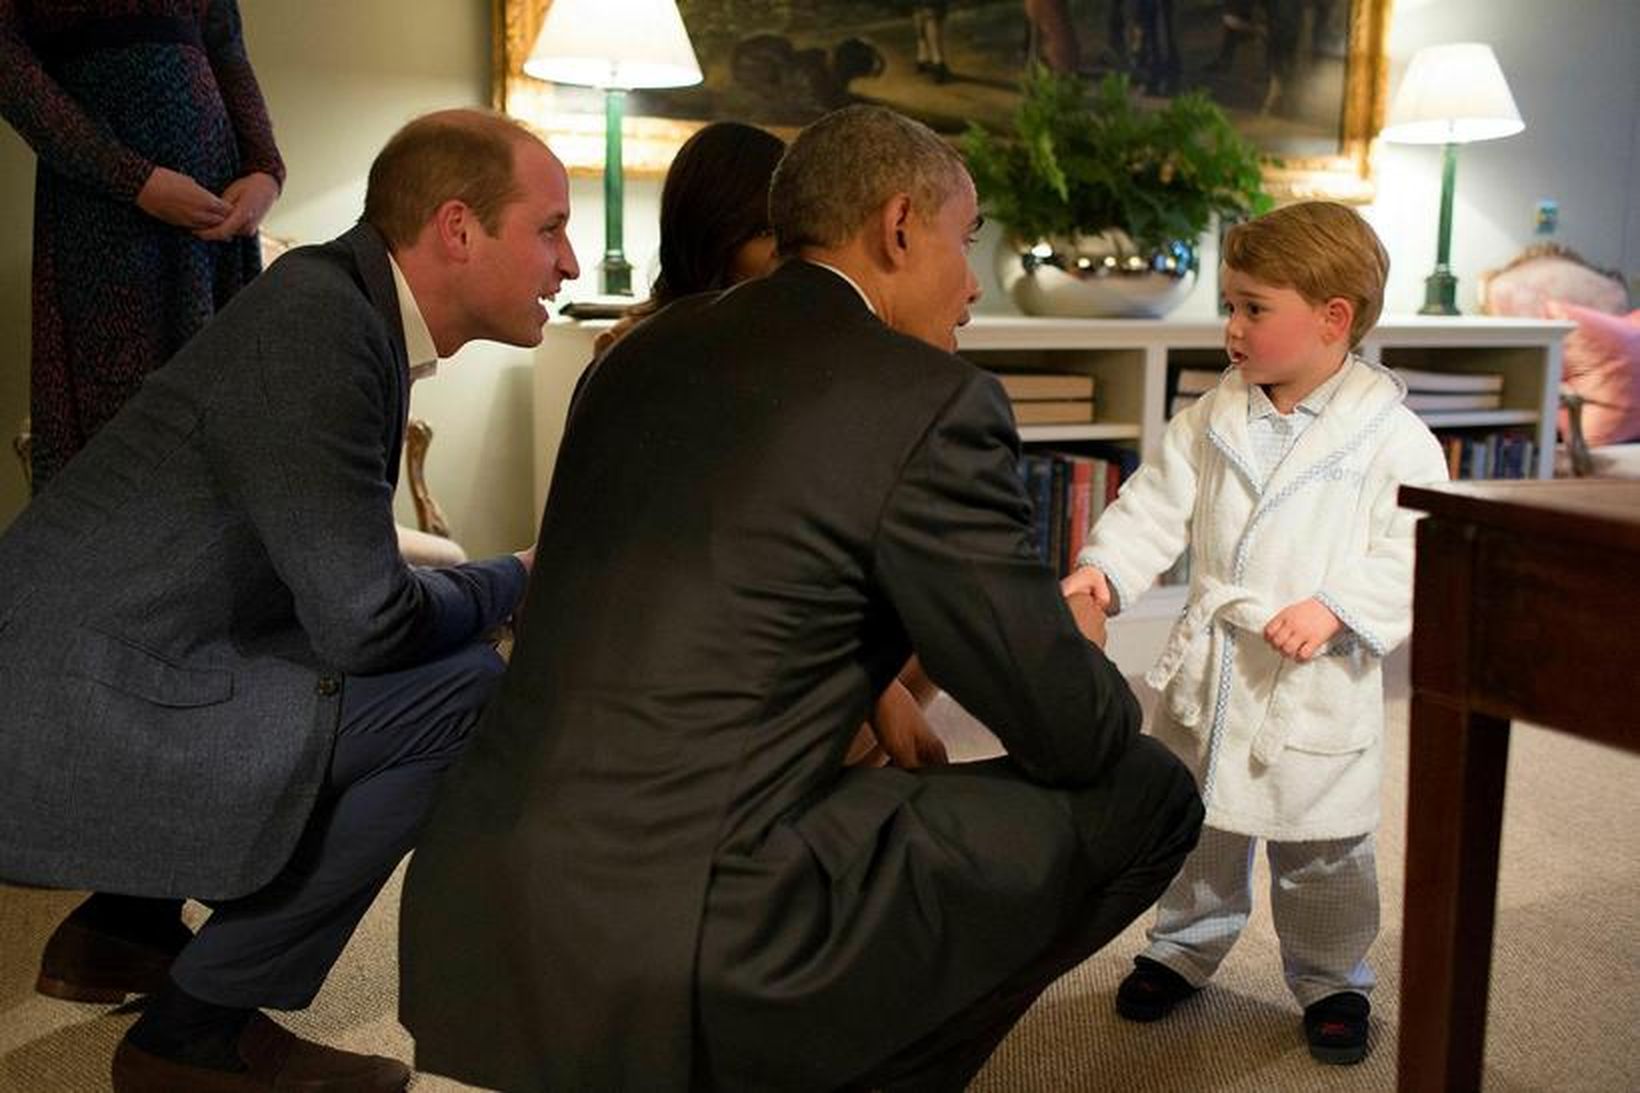 Georg prins ræðir við Obama hjónin.